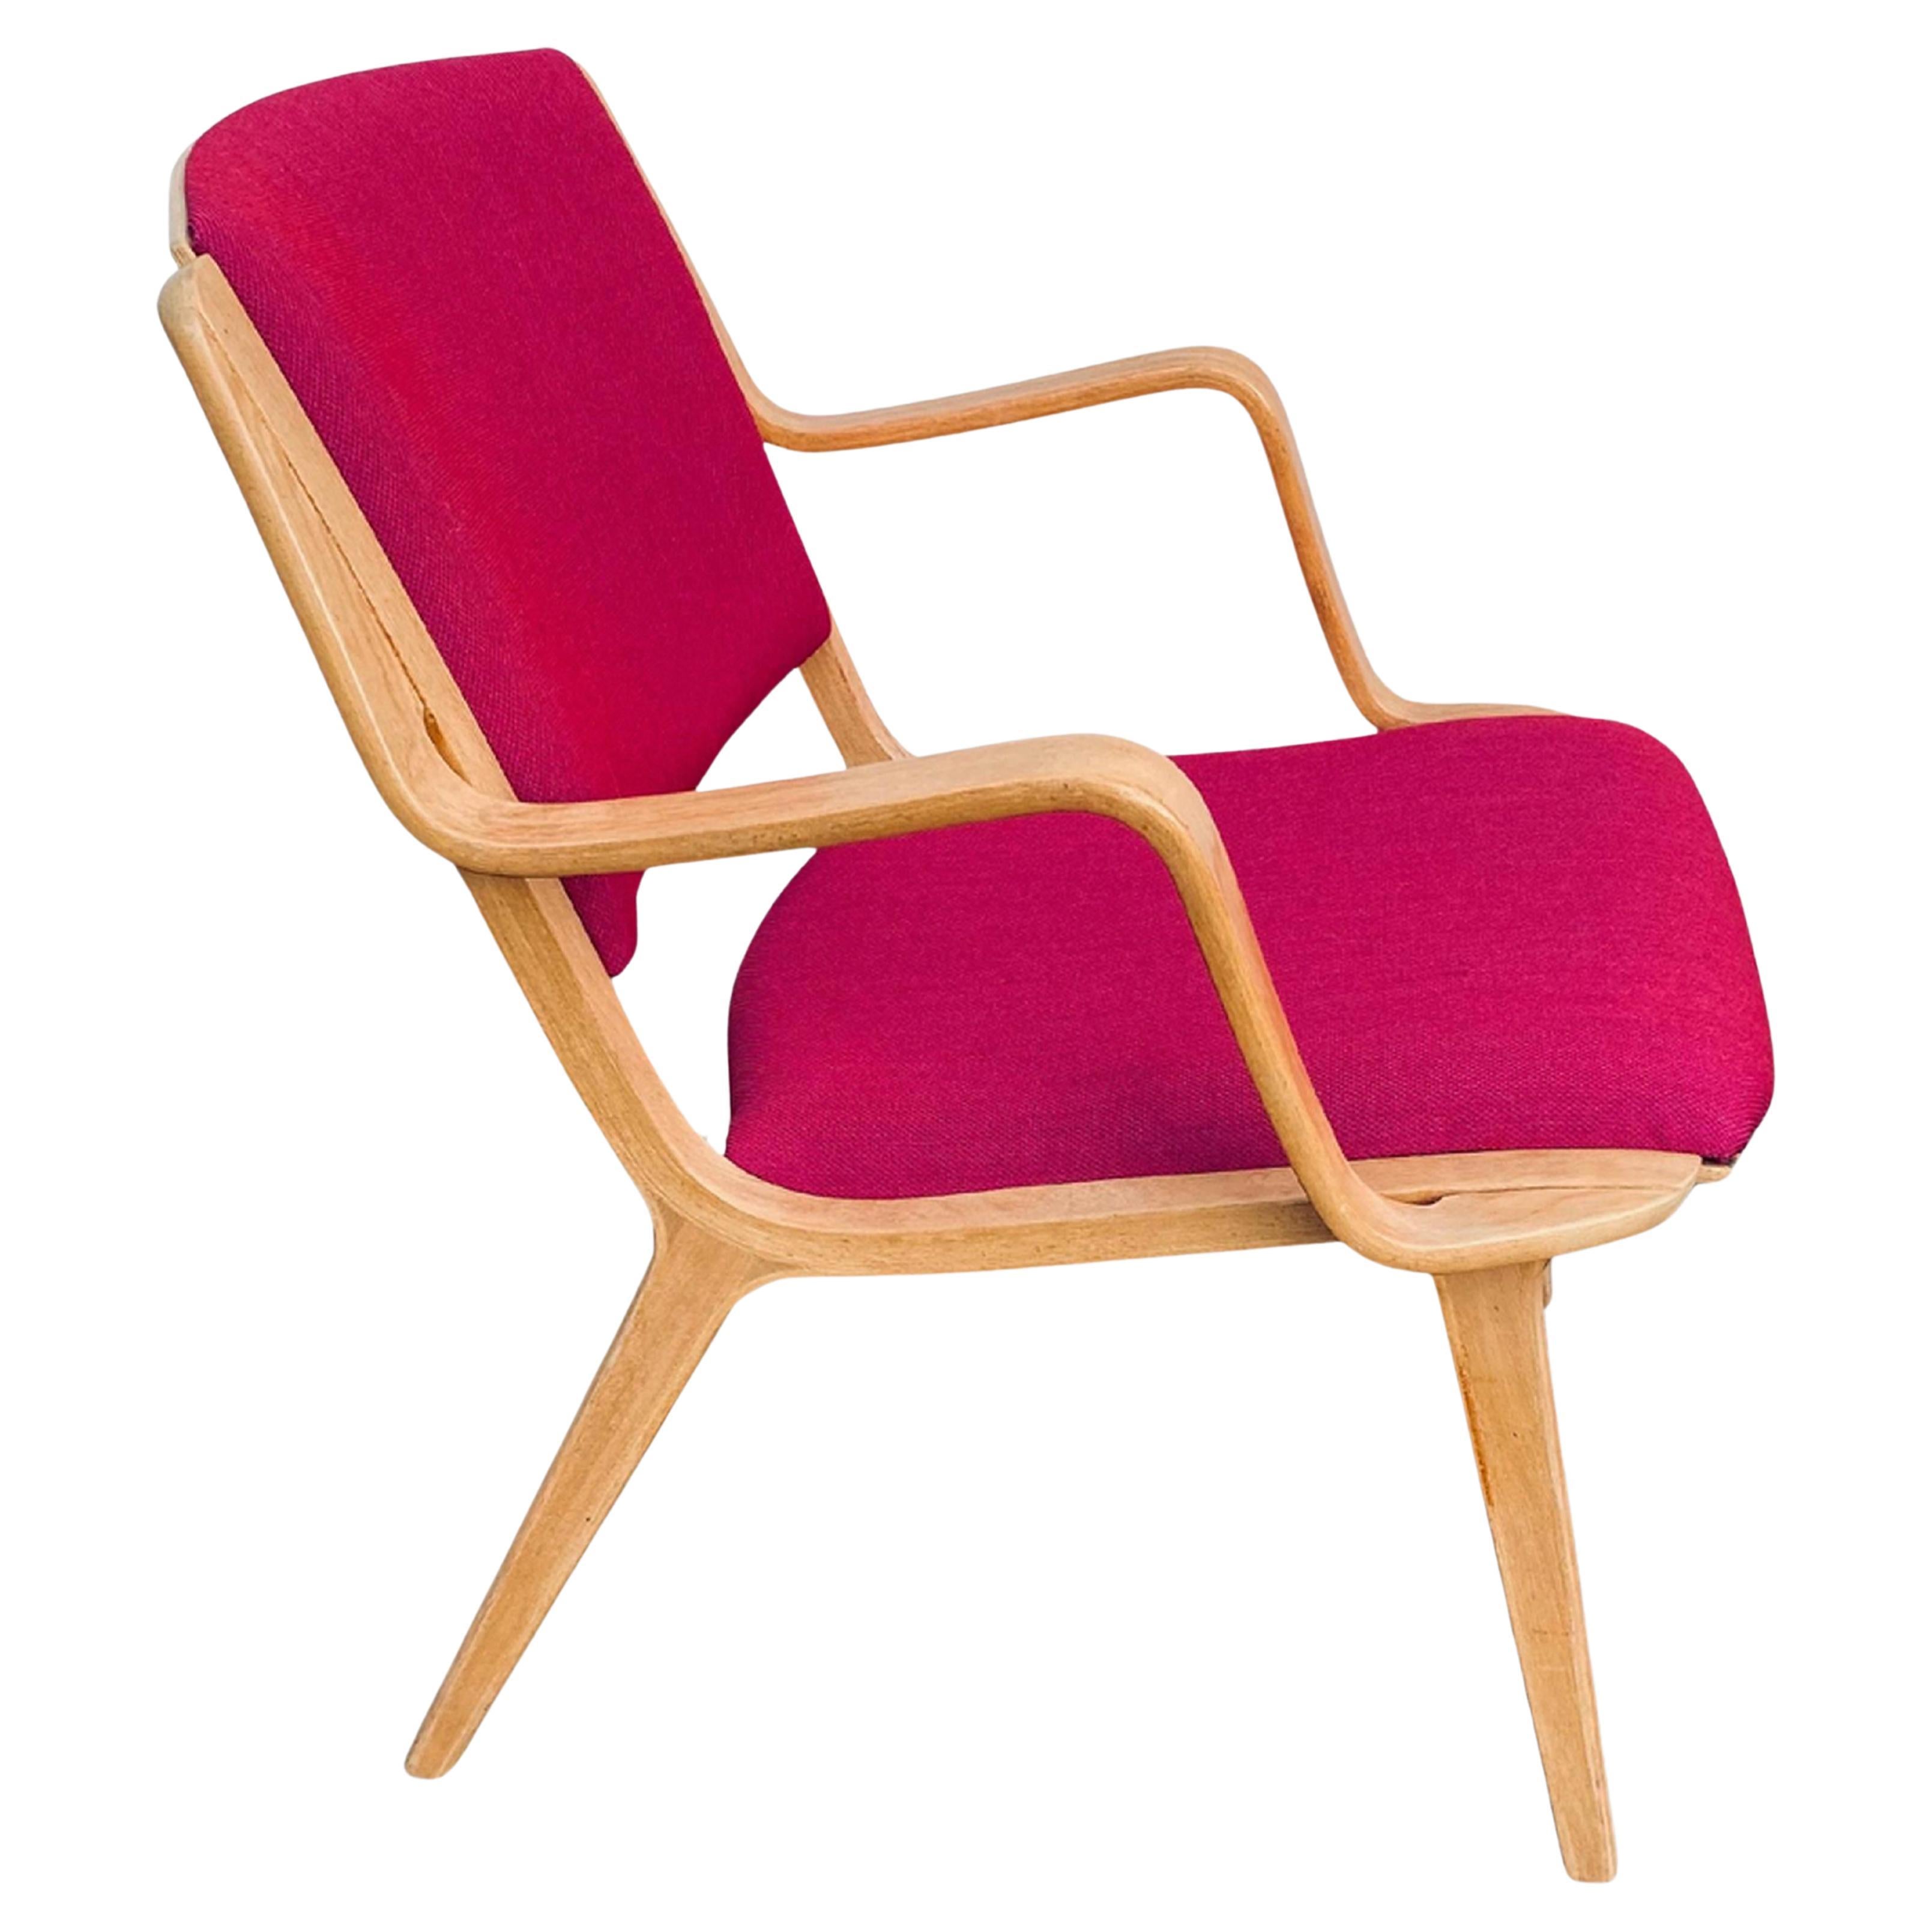 Chaise longue "AX" des designers danois Peter Hvidt et Orla Mølgaard 